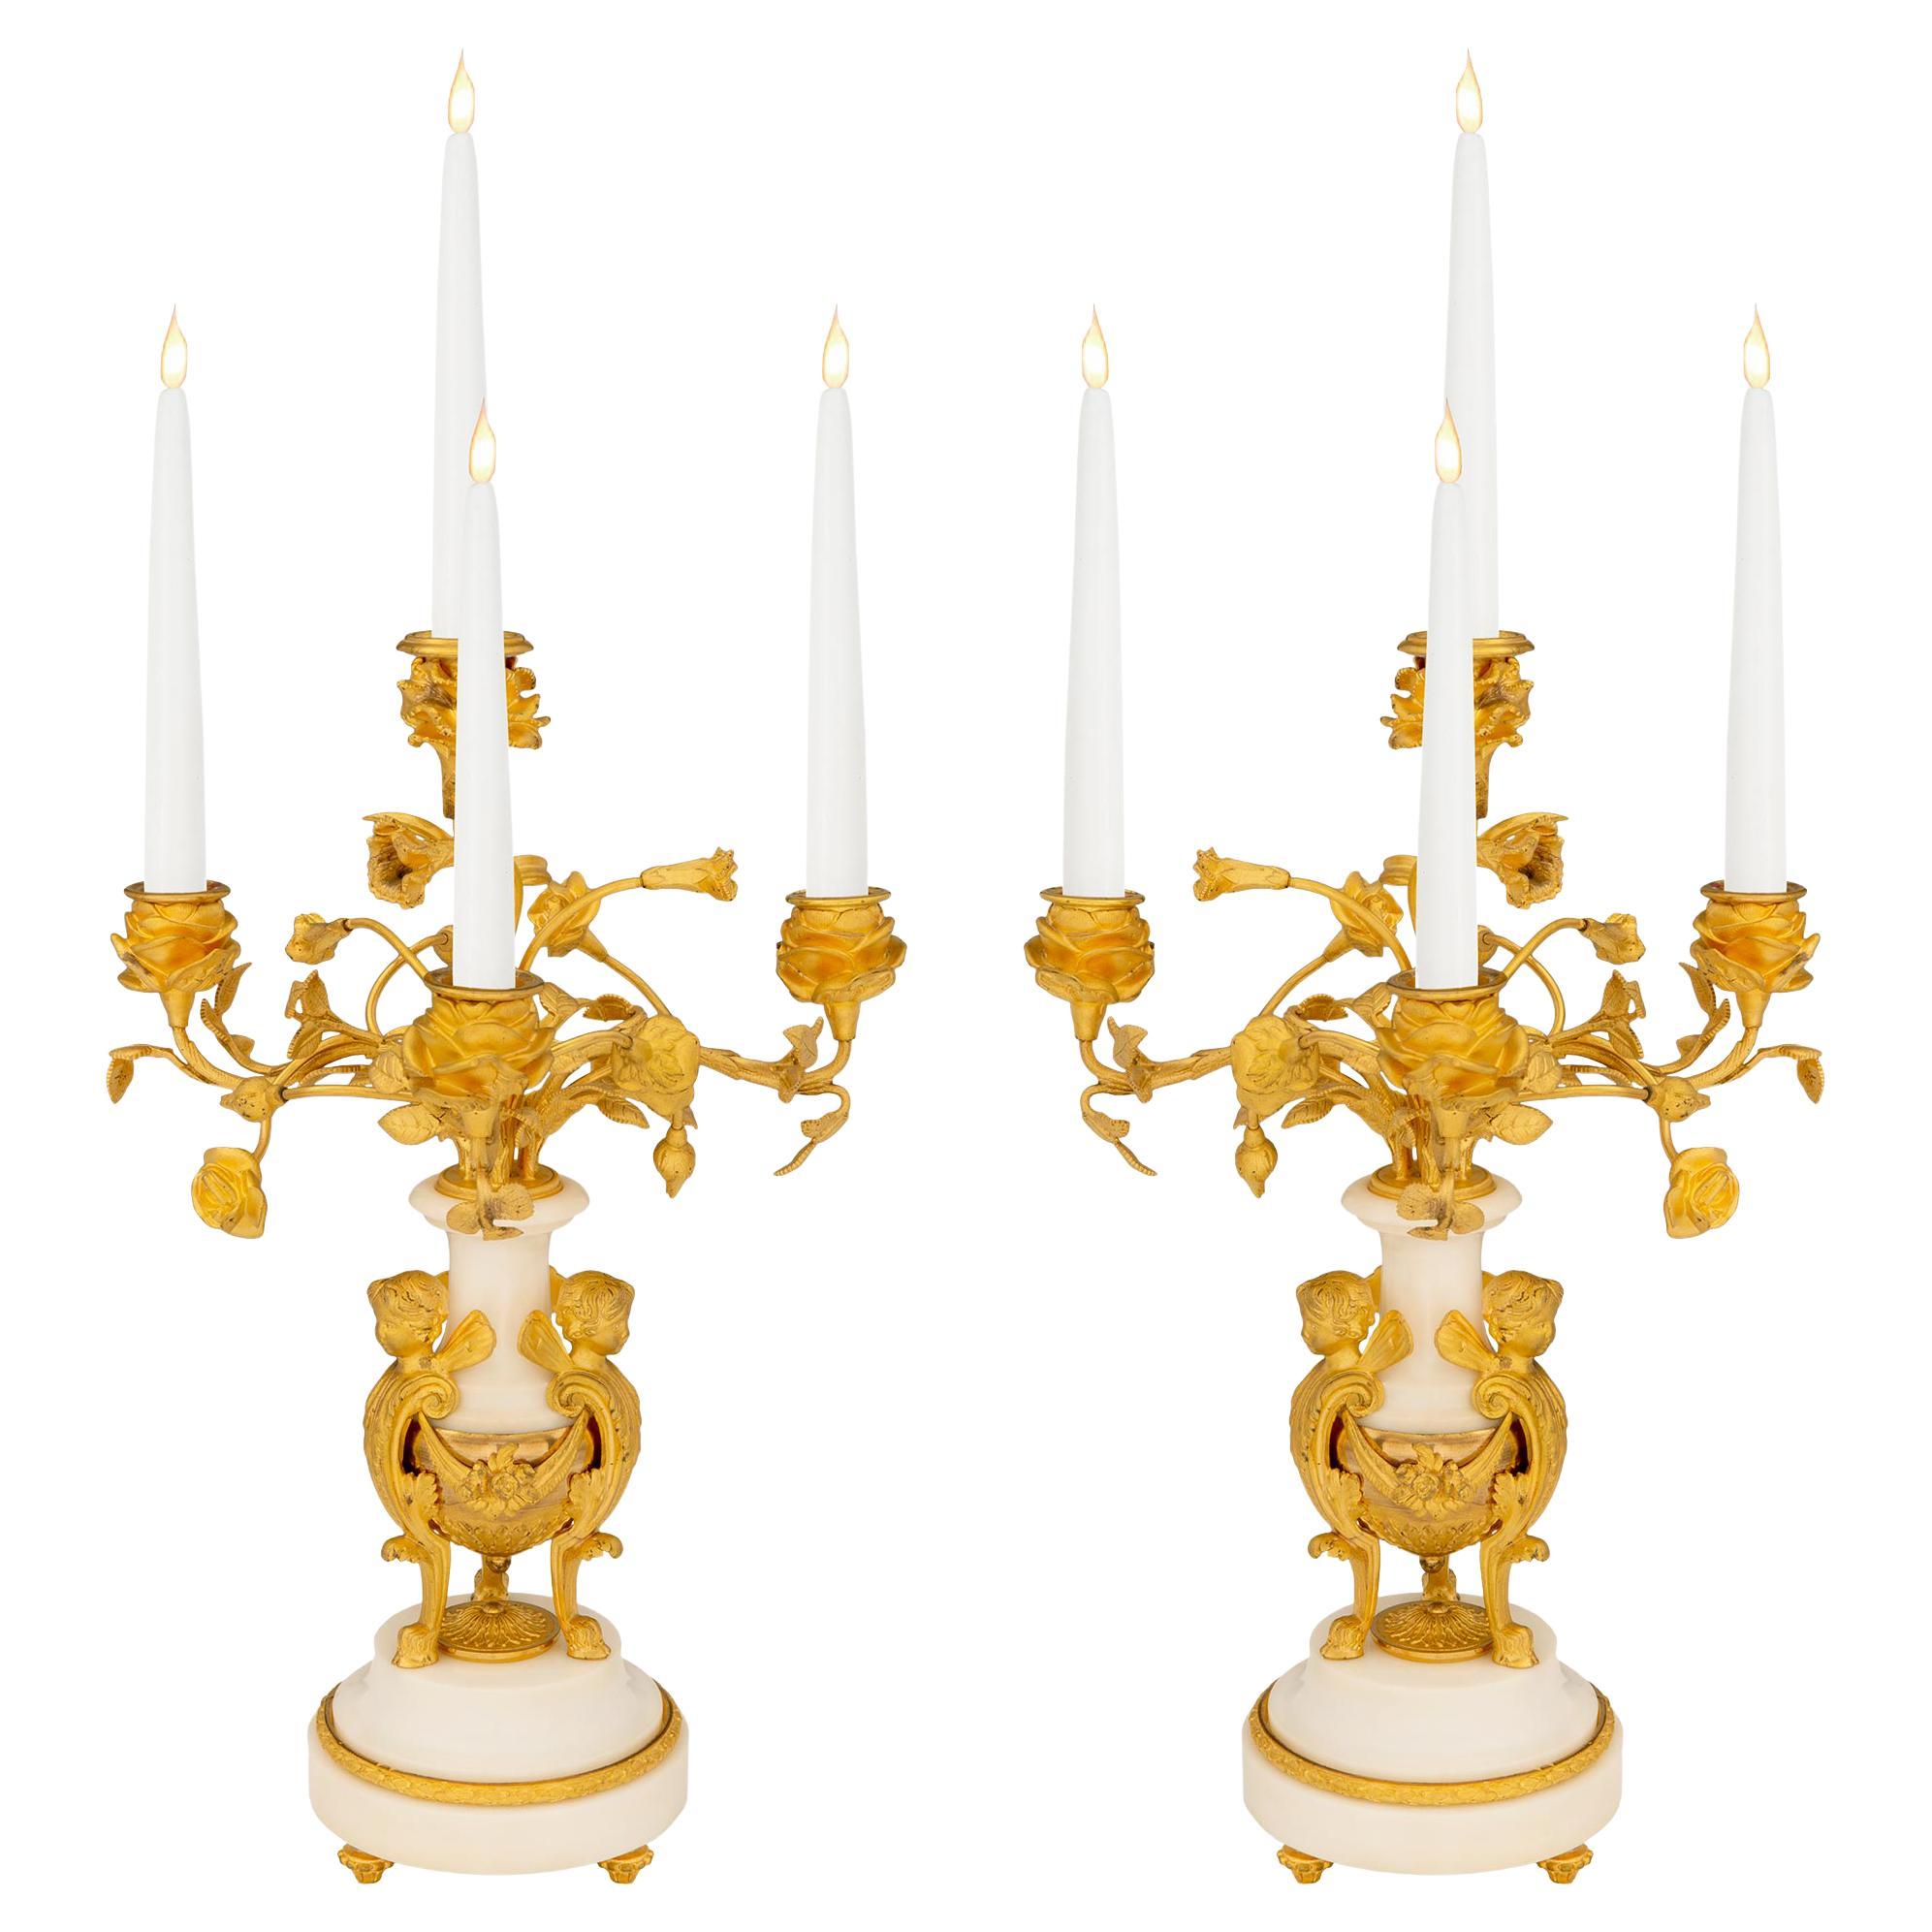 Paire de candélabres à quatre bras en bronze doré et marbre de style Louis XVI du 19ème siècle français